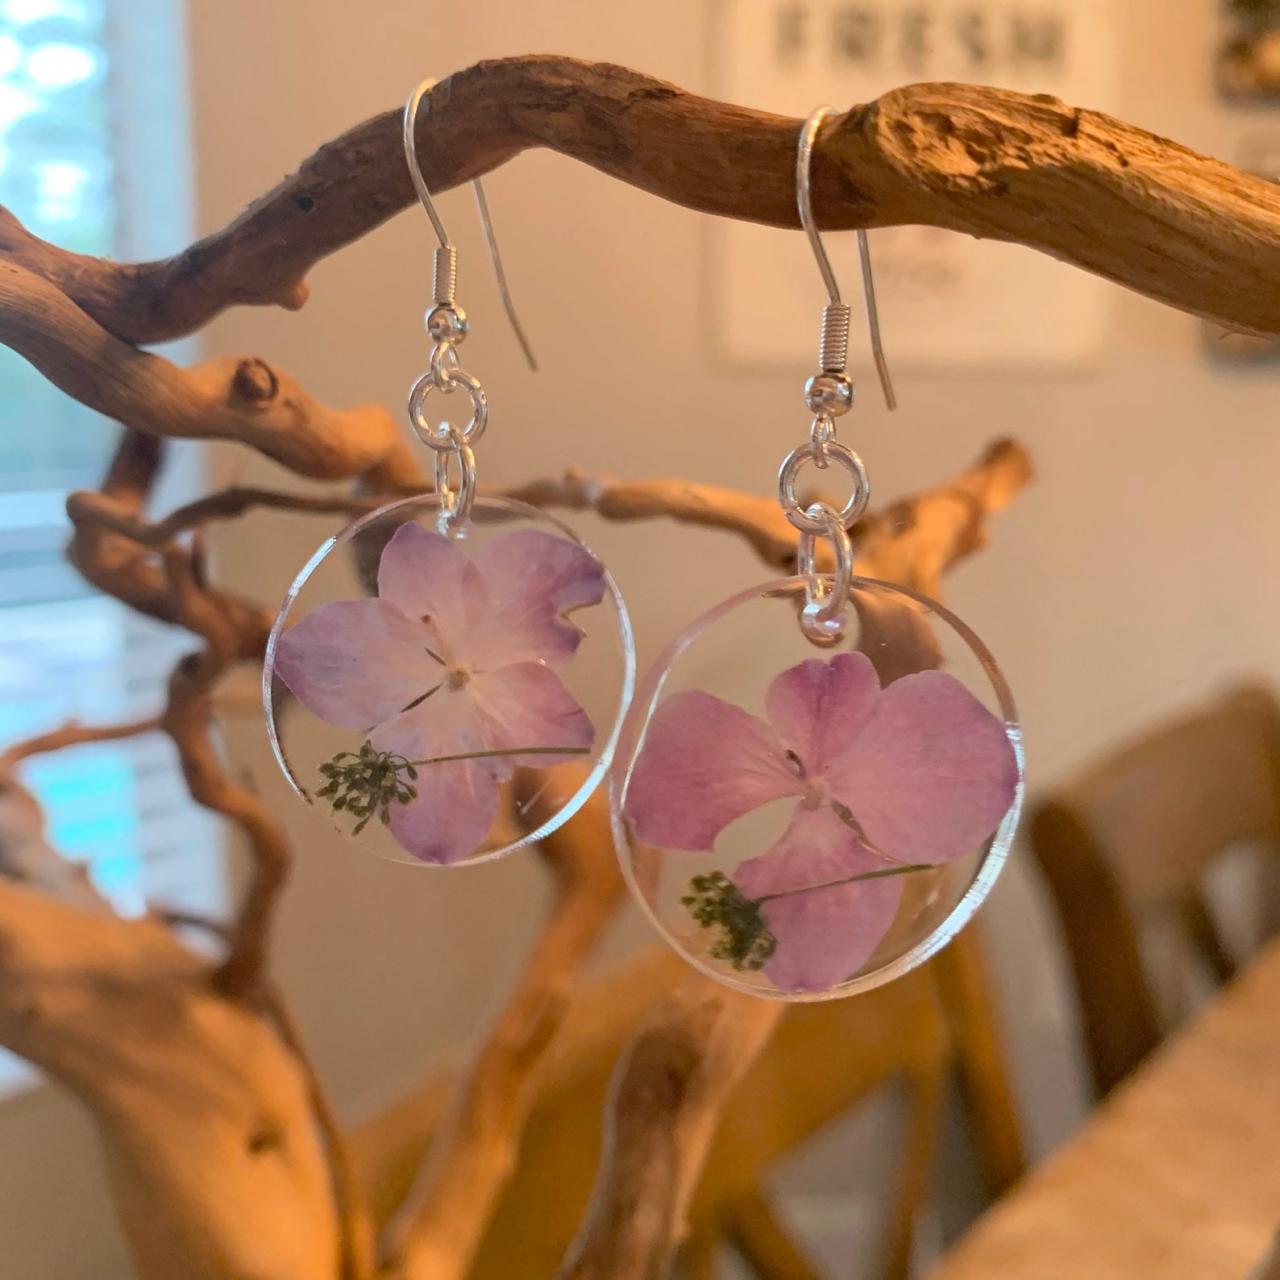 Resin Pressed Flower Earrings,real Flower Earrings, Pink Dried Flower Earrings